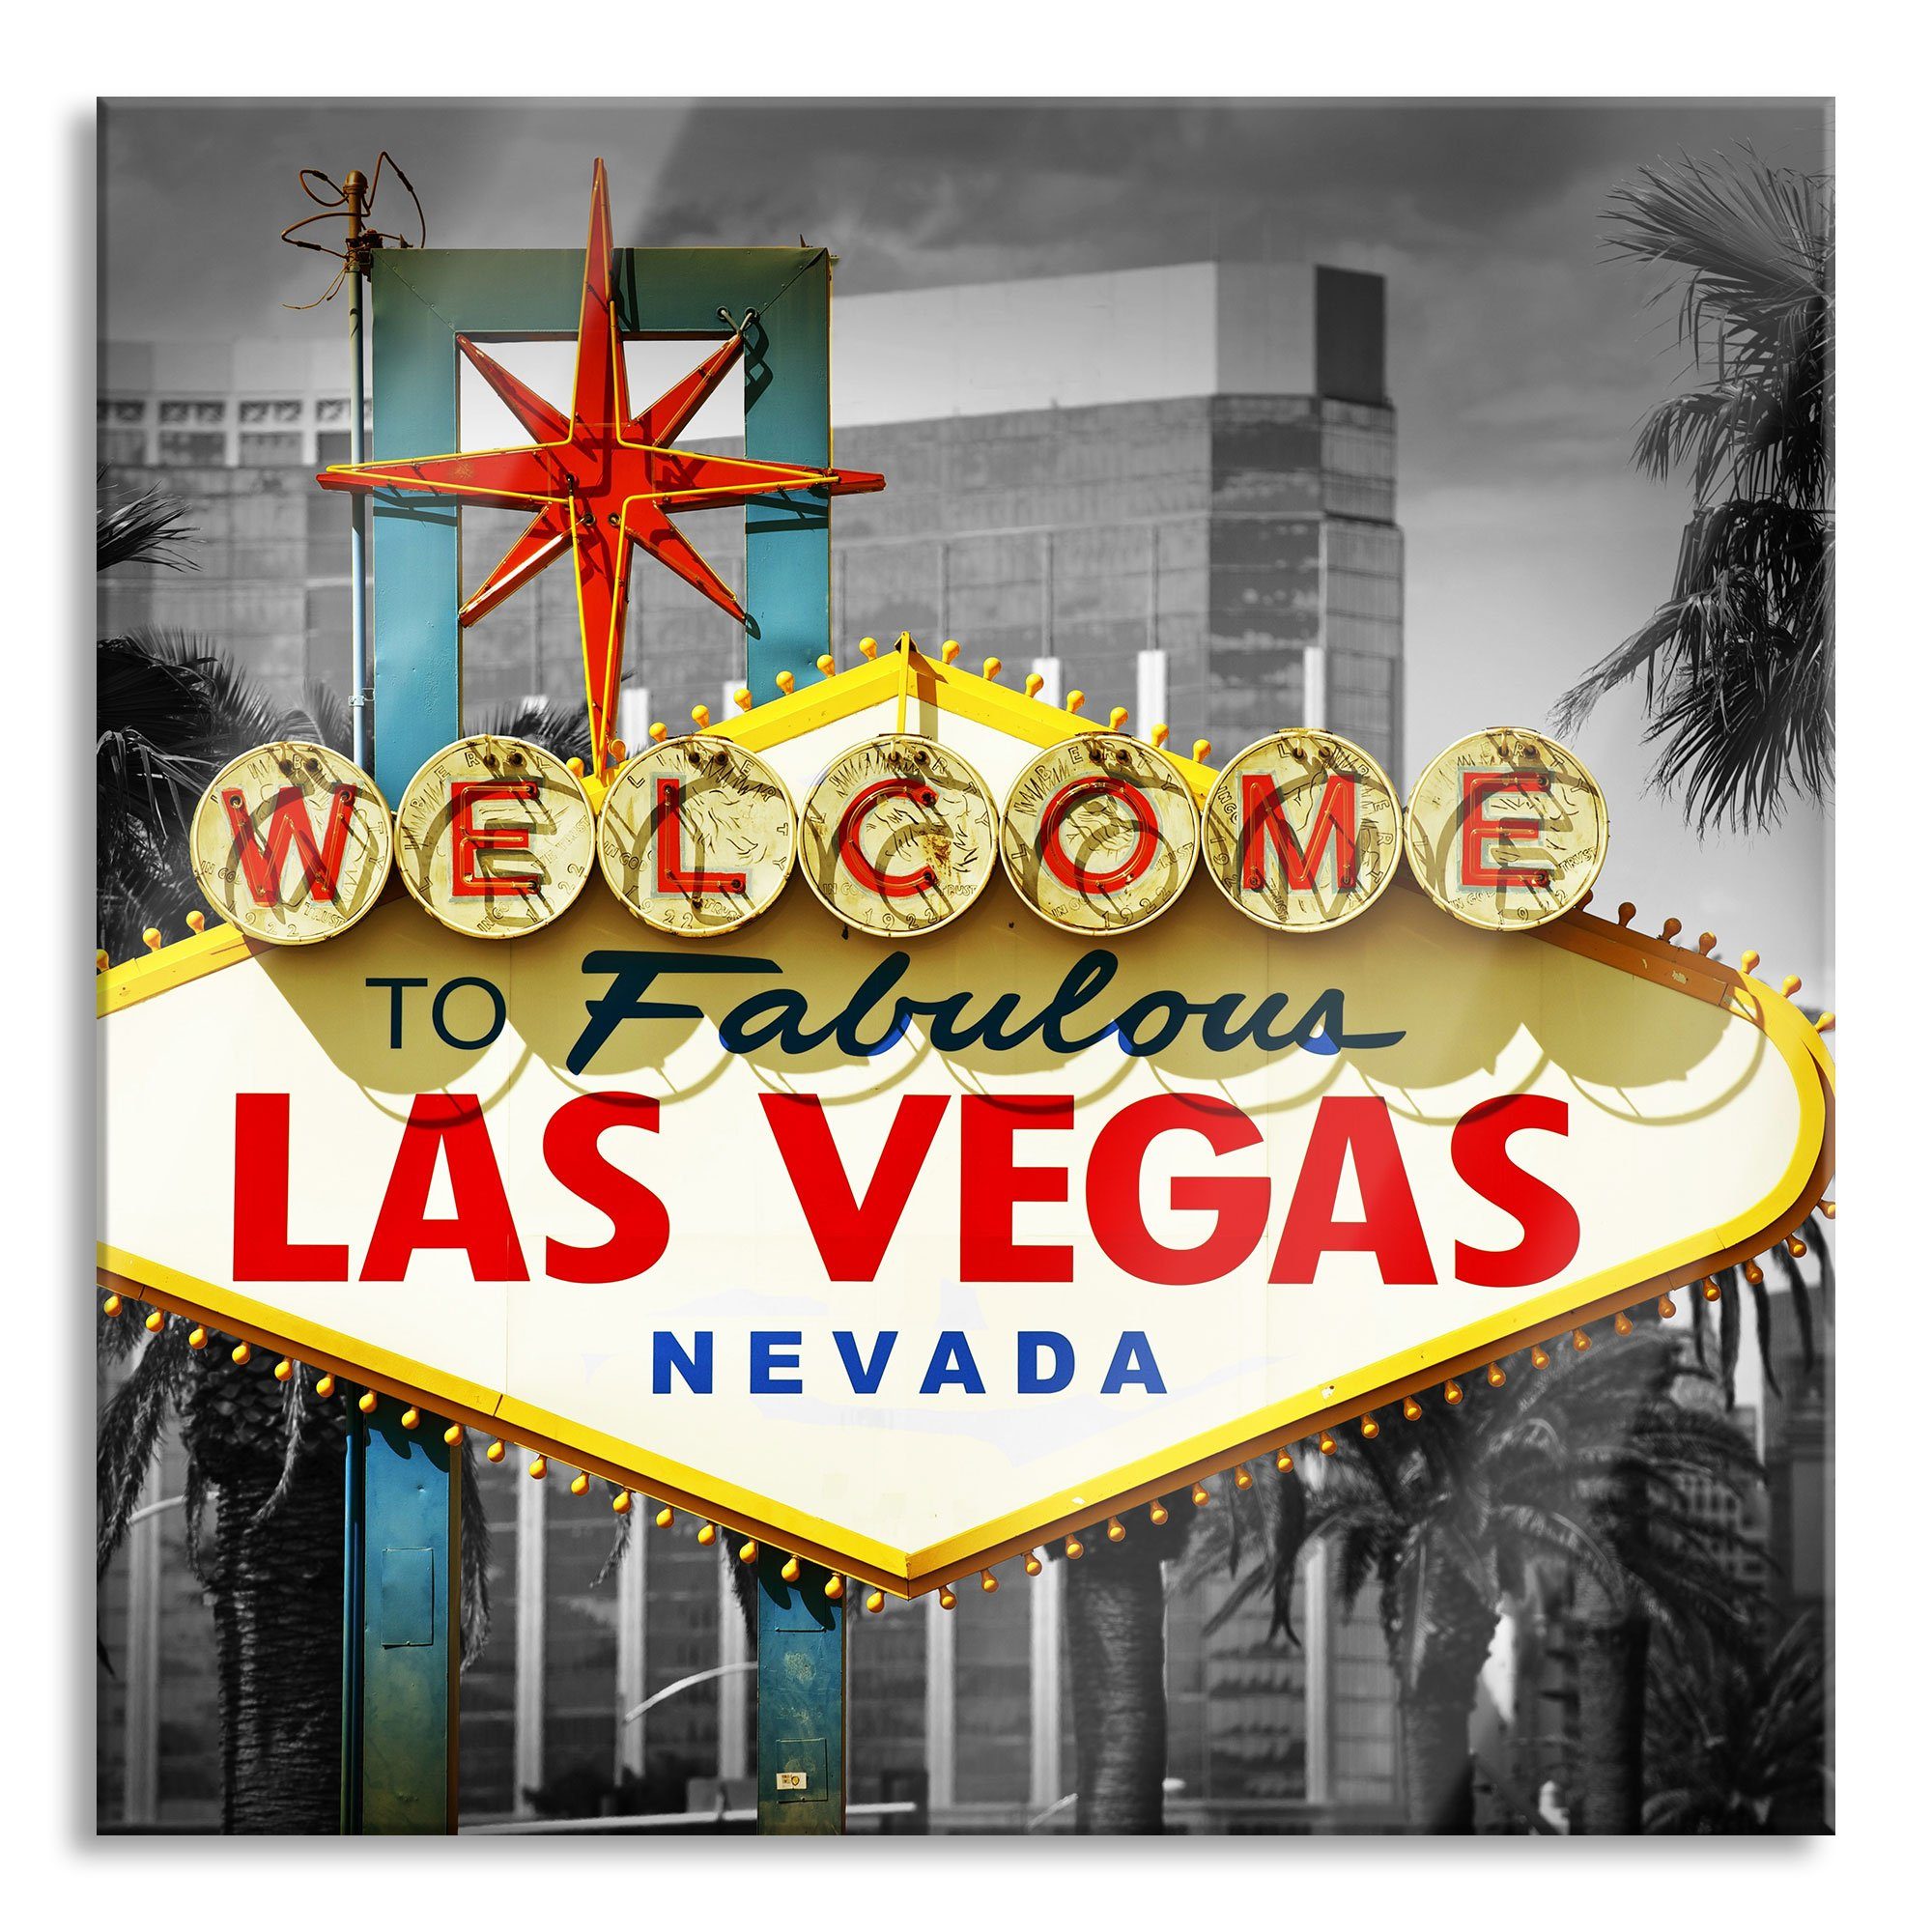 Pixxprint Glasbild Ortseingangsschild Las Vegas, Ortseingangsschild Las Vegas (1 St), Glasbild aus Echtglas, inkl. Aufhängungen und Abstandshalter